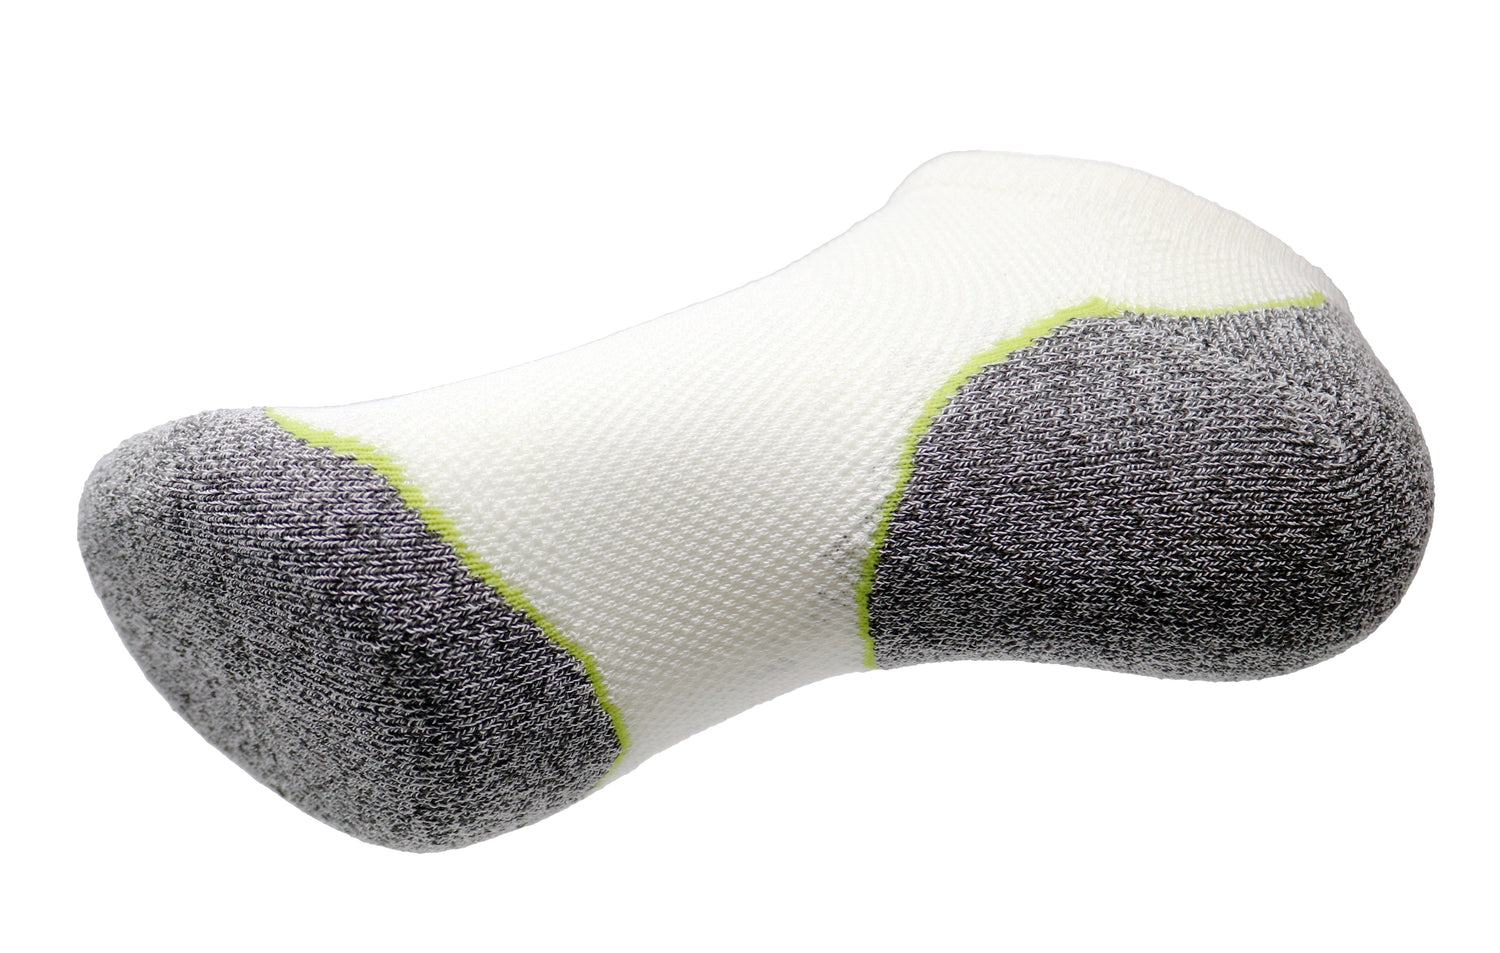 dry feet socks socks for dry feet moisturizing socks